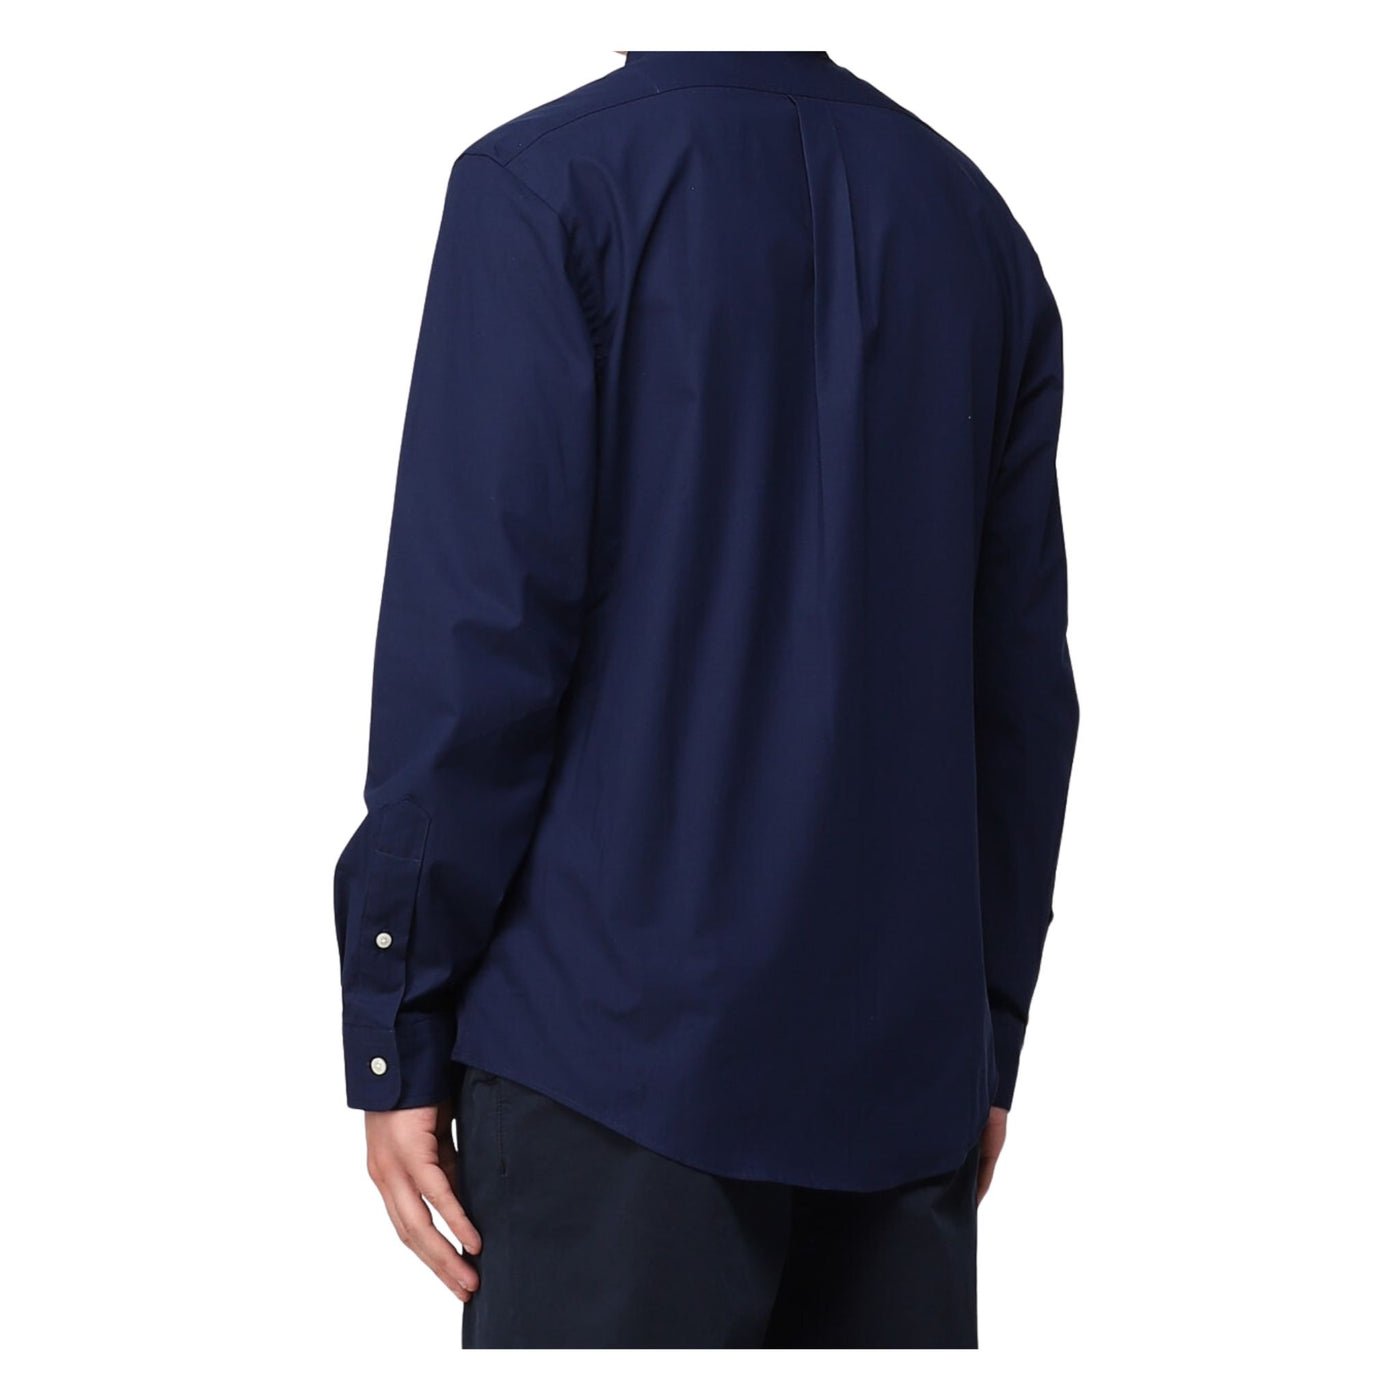 Immagine retro della camicia blu da uomo firmata Ralph Lauren,manica lunga,polsini con bottoni.